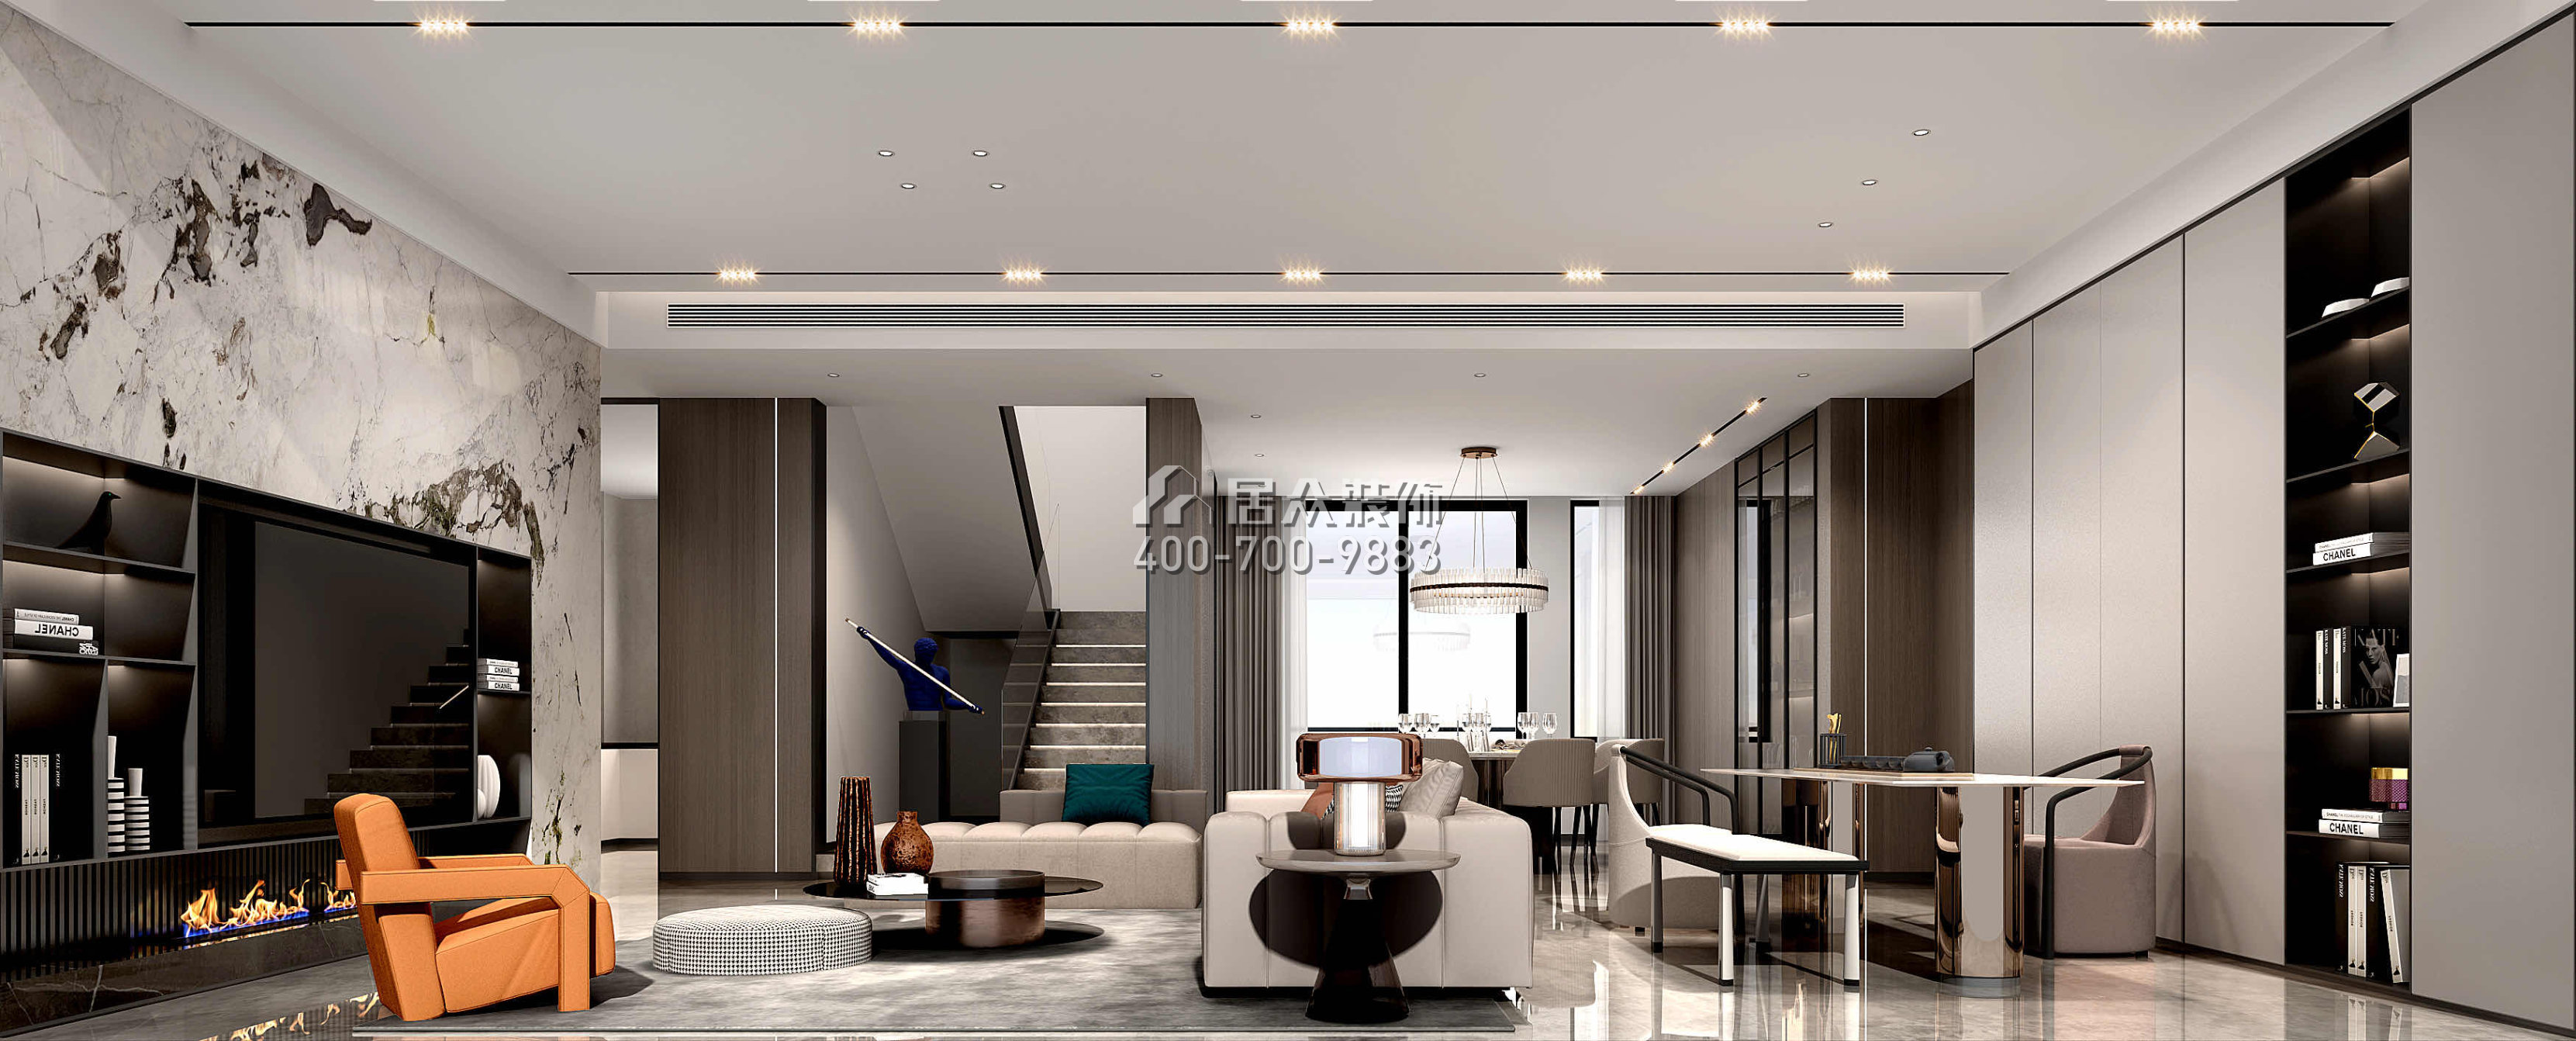 假日君悅灣380平方米現代簡約風格復式戶型客廳裝修效果圖